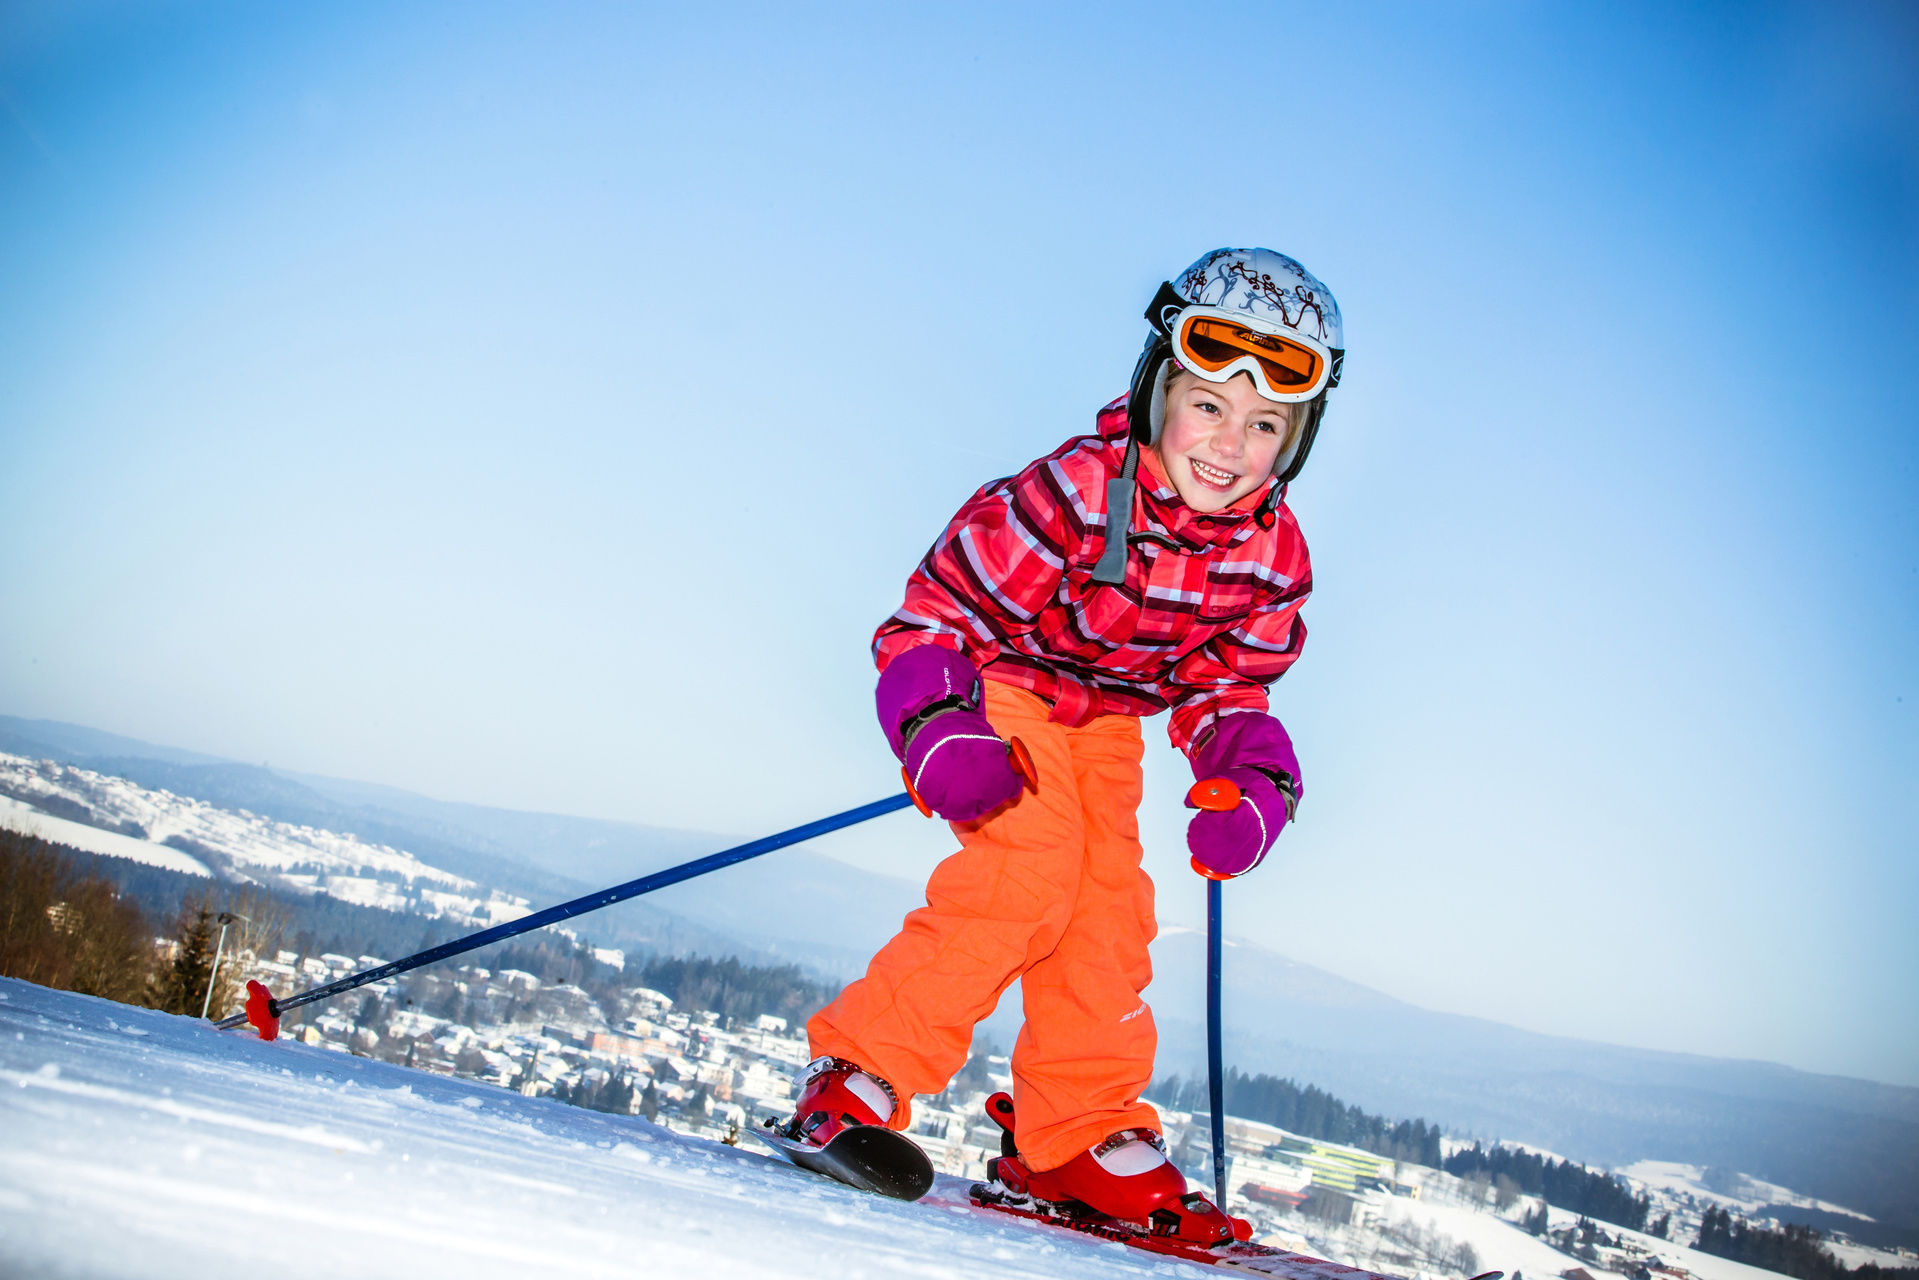 Ice skis. Лыжный спорт дети. Дети на горных лыжах. Горнолыжный спорт дети. Мальчик на лыжах.